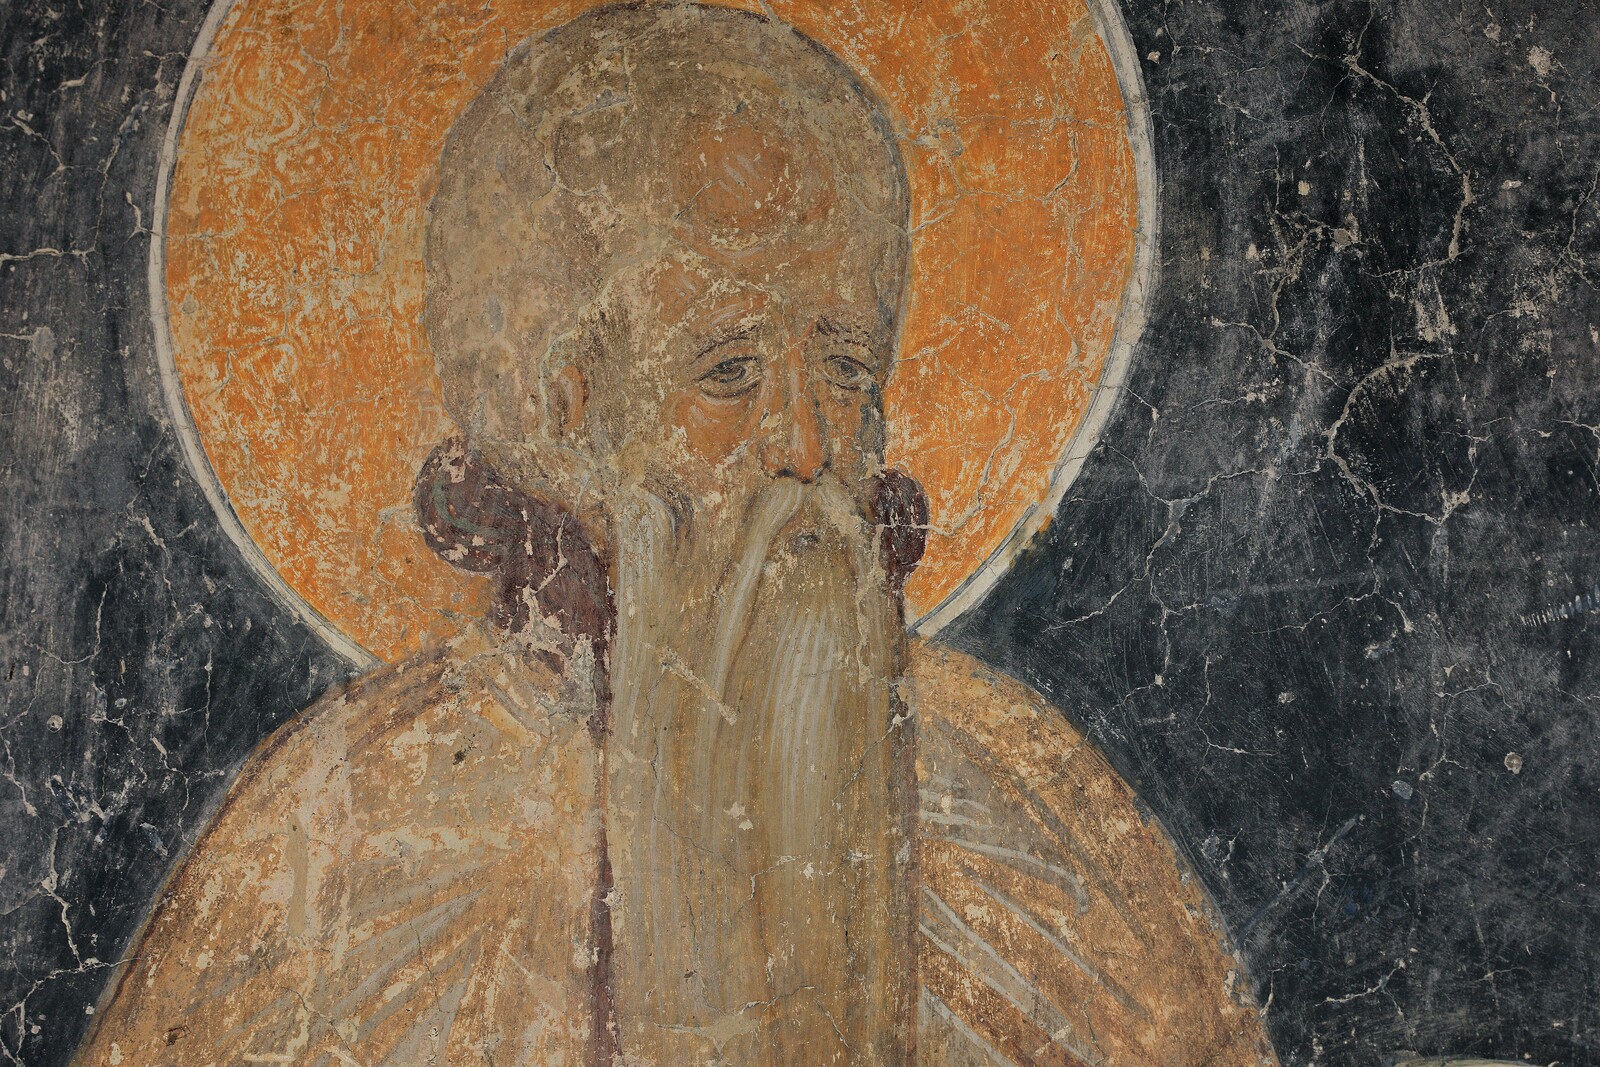 St Euthimius, detail